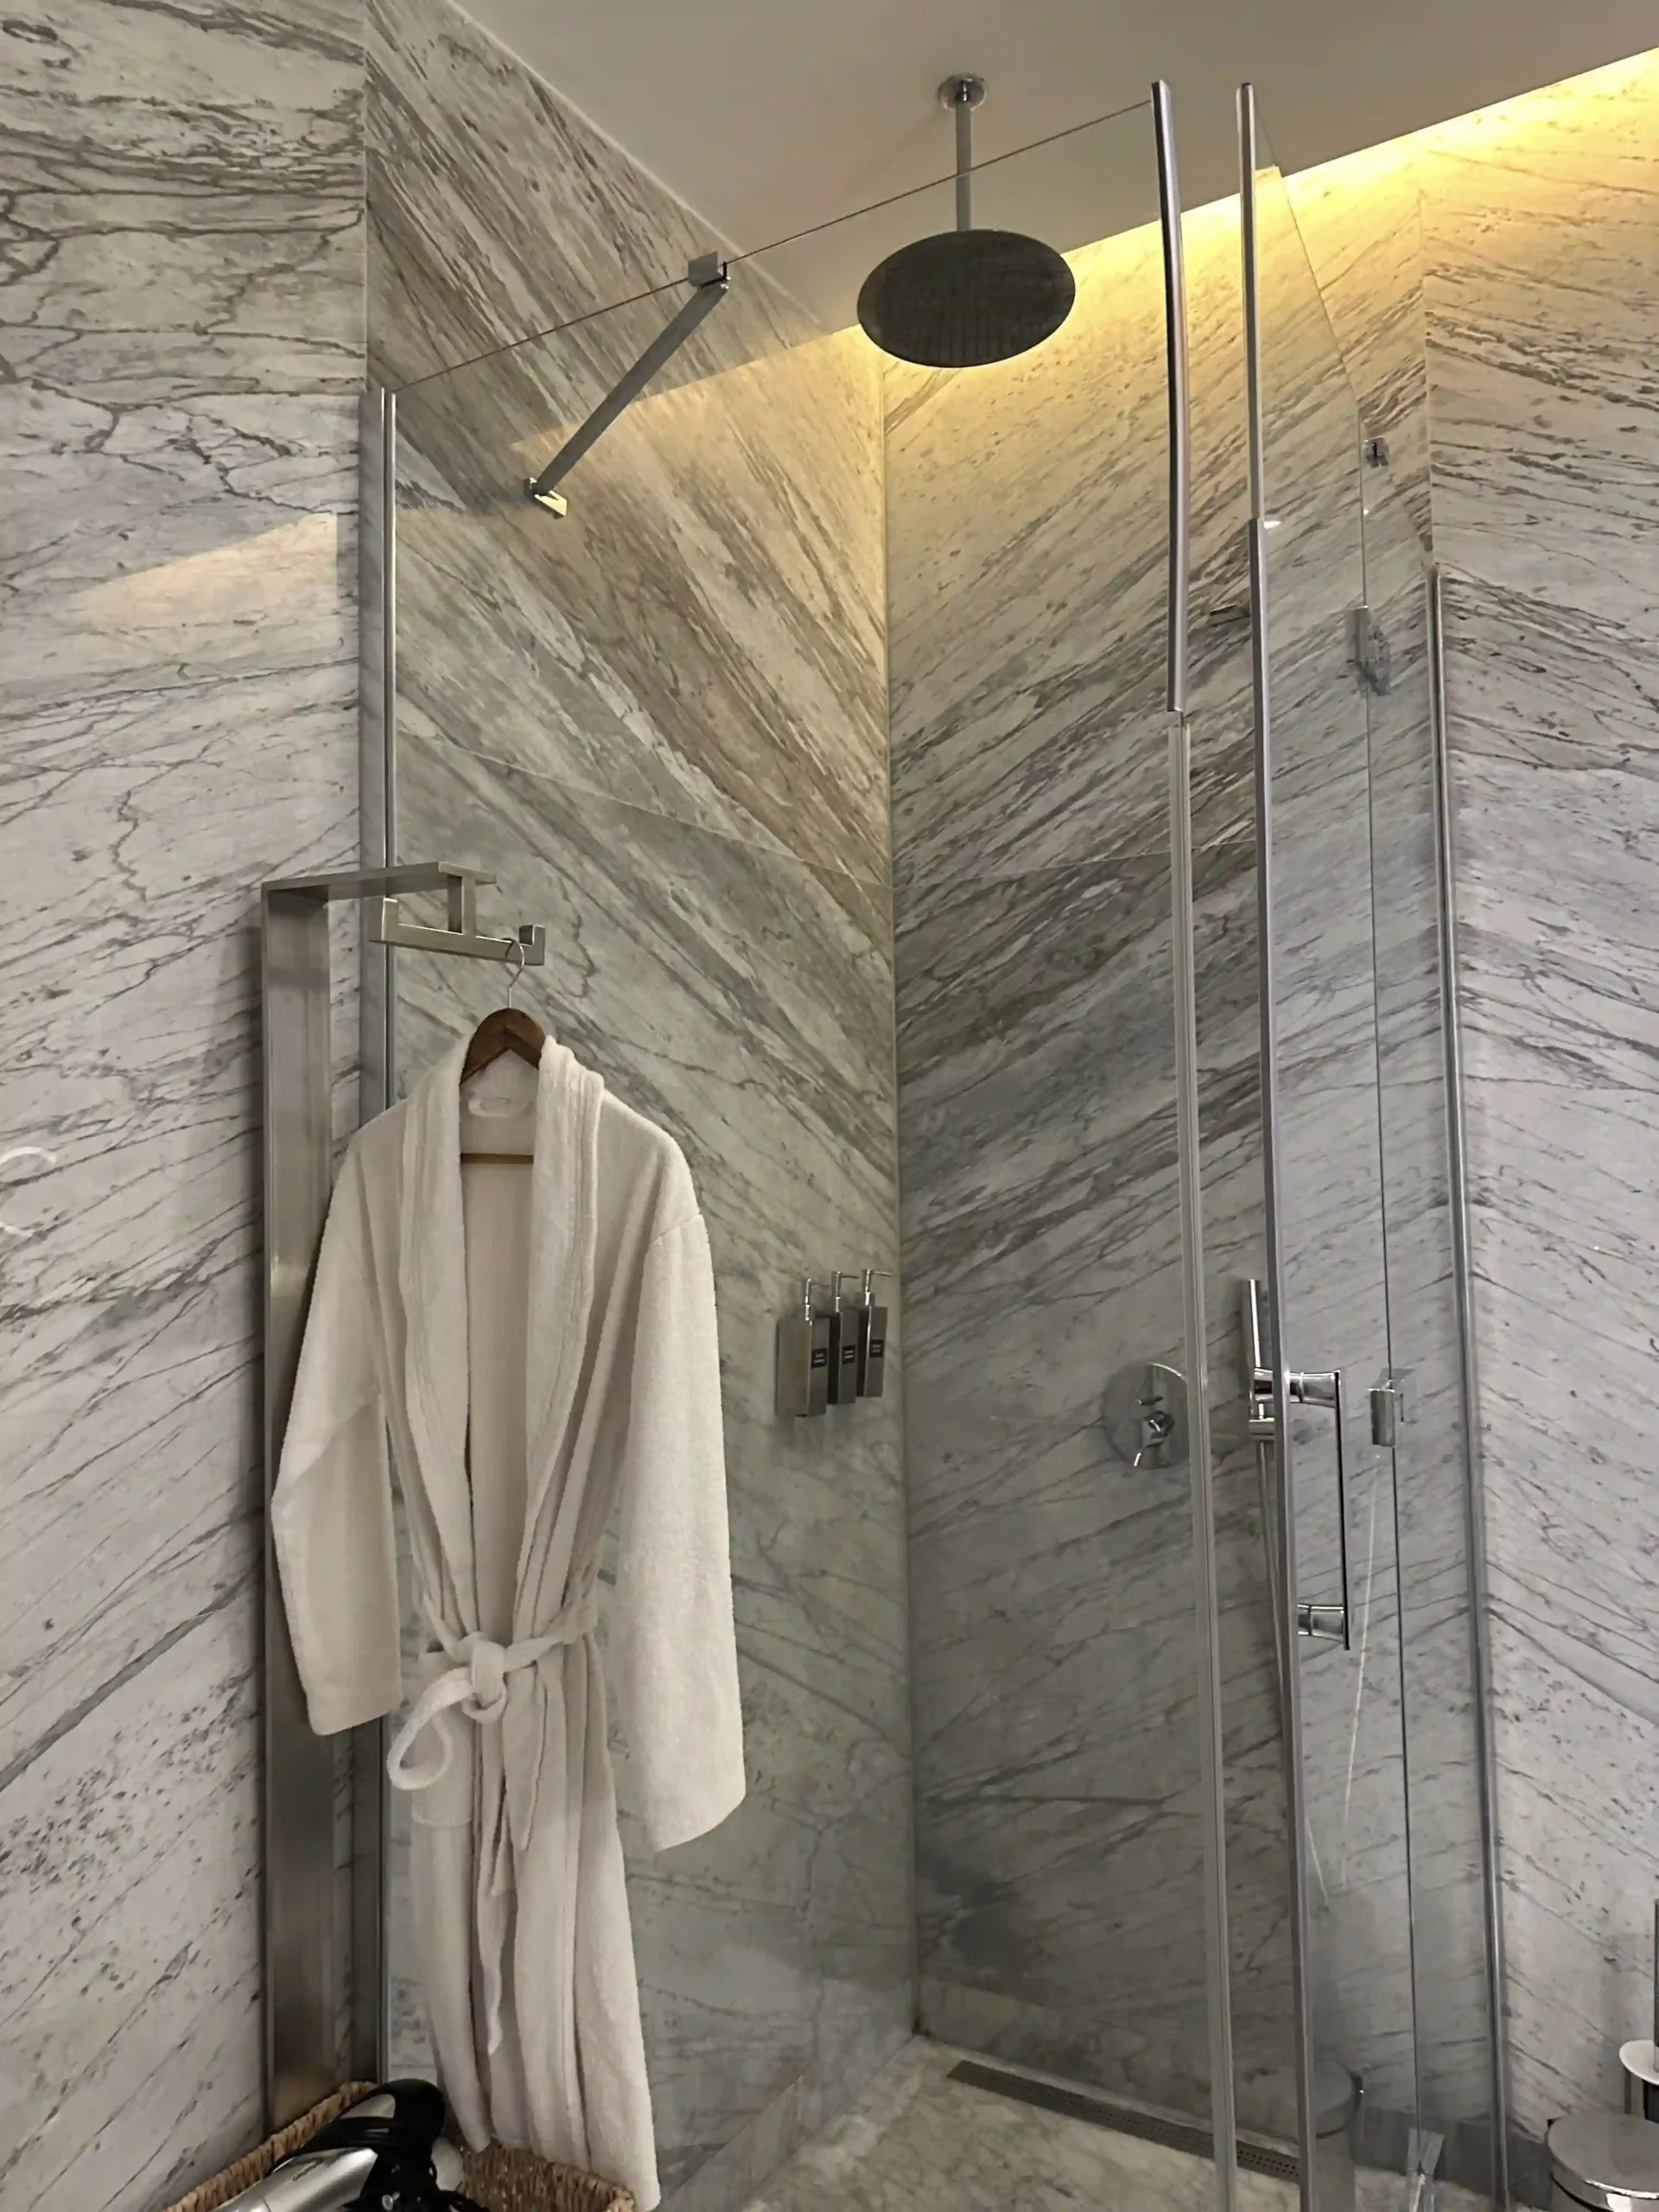 a white bathrobe on a metal bar in a bathroom